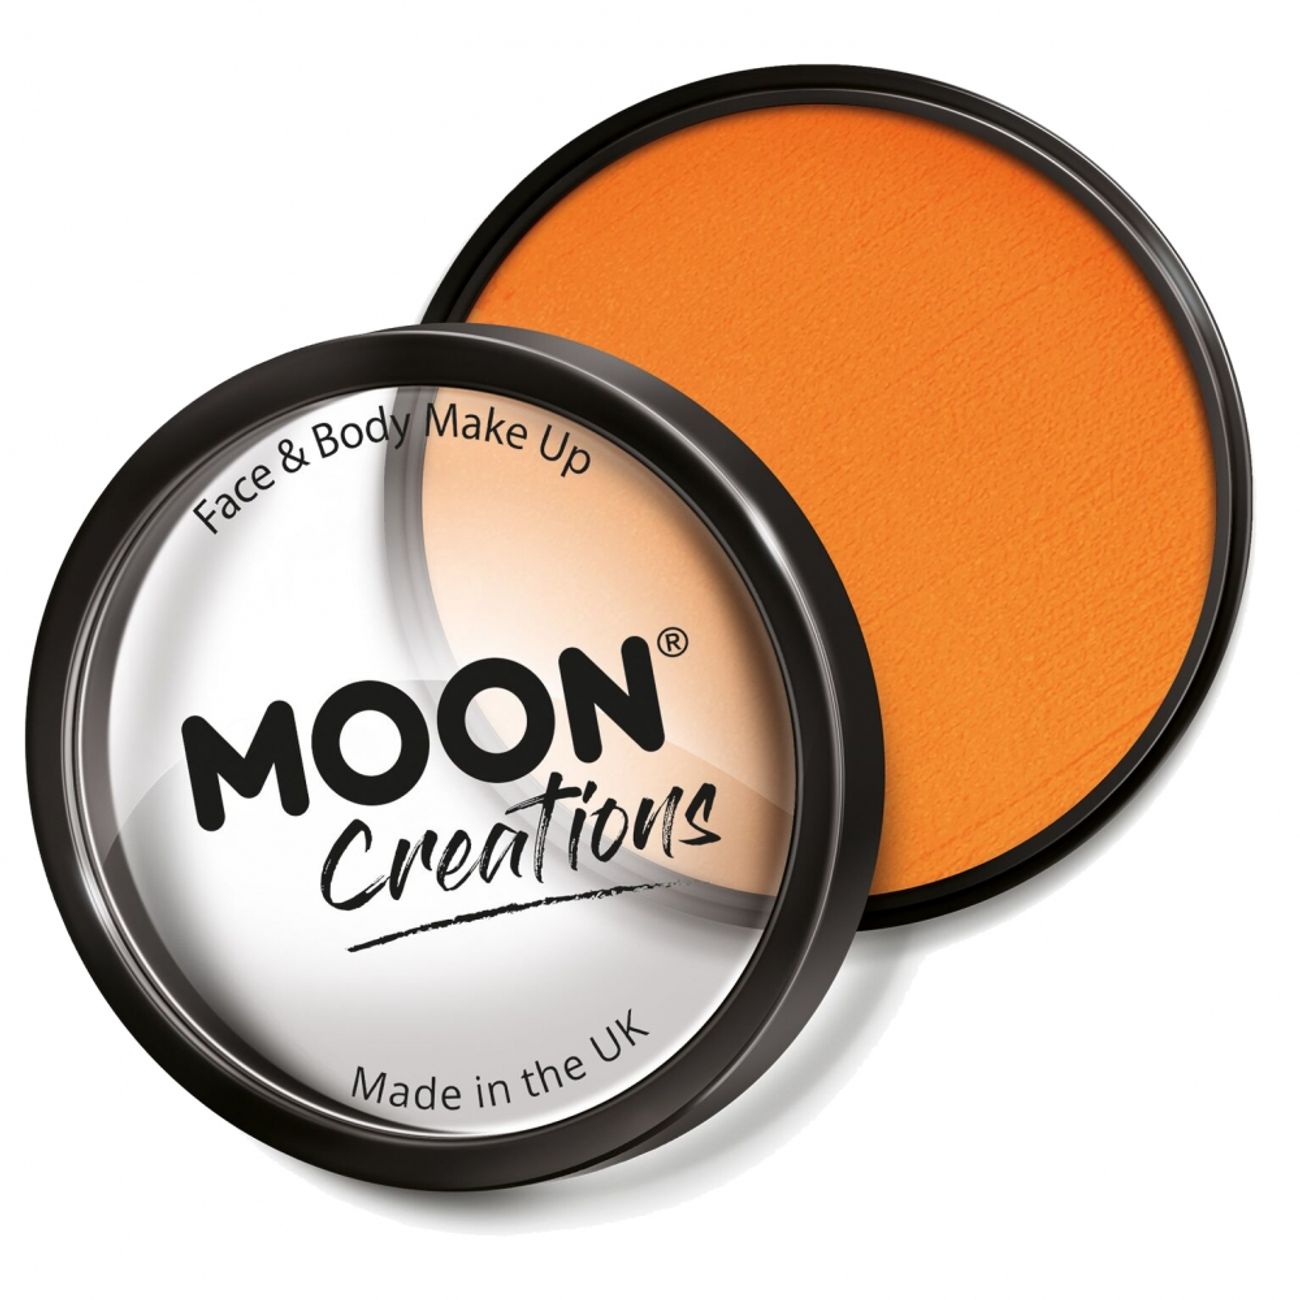 moon-creations-pro-ansikts-kroppsfarg-17